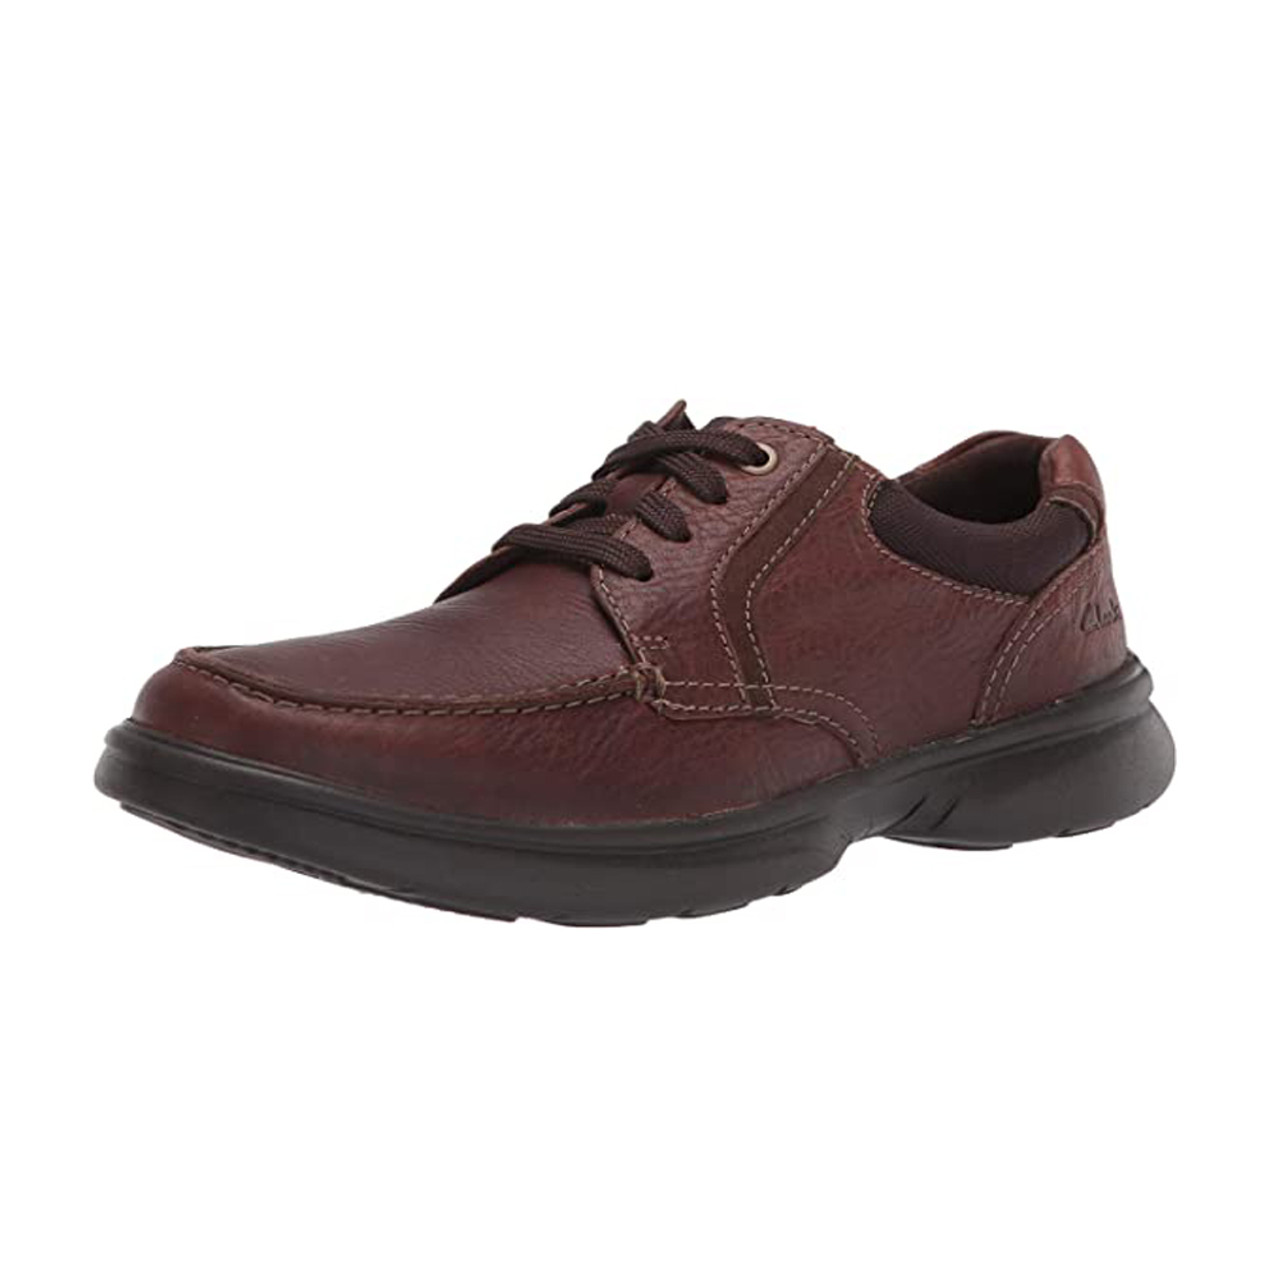 Clarks Men's Bradley Vibe Lace Up - Brown | Discount Clarks Men's Shoes ...